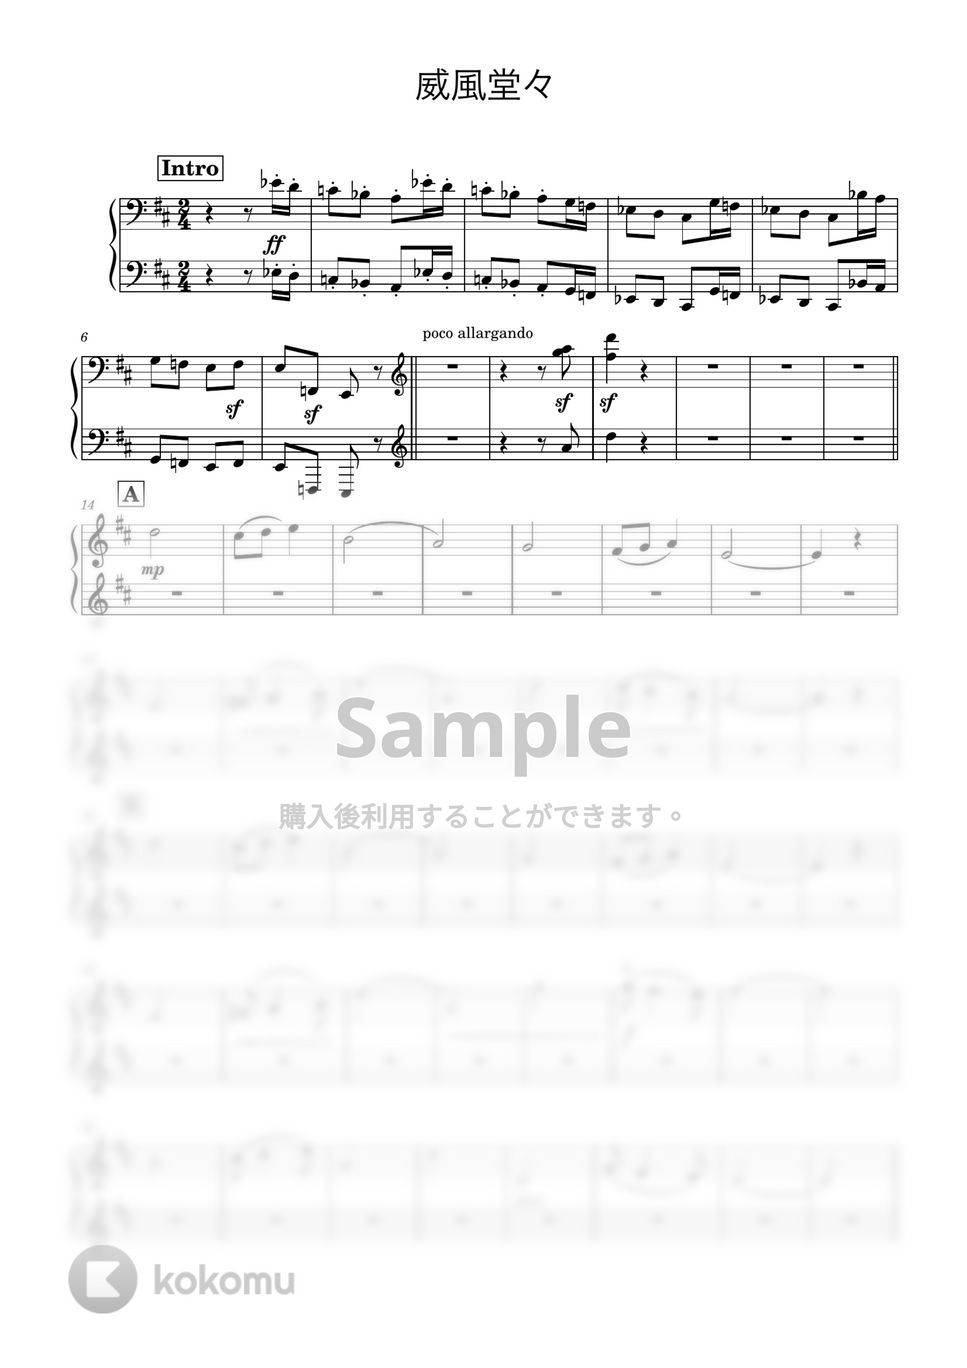 エドワード・エルガー - 威風堂々 (3台ピアノ) by necoyoc